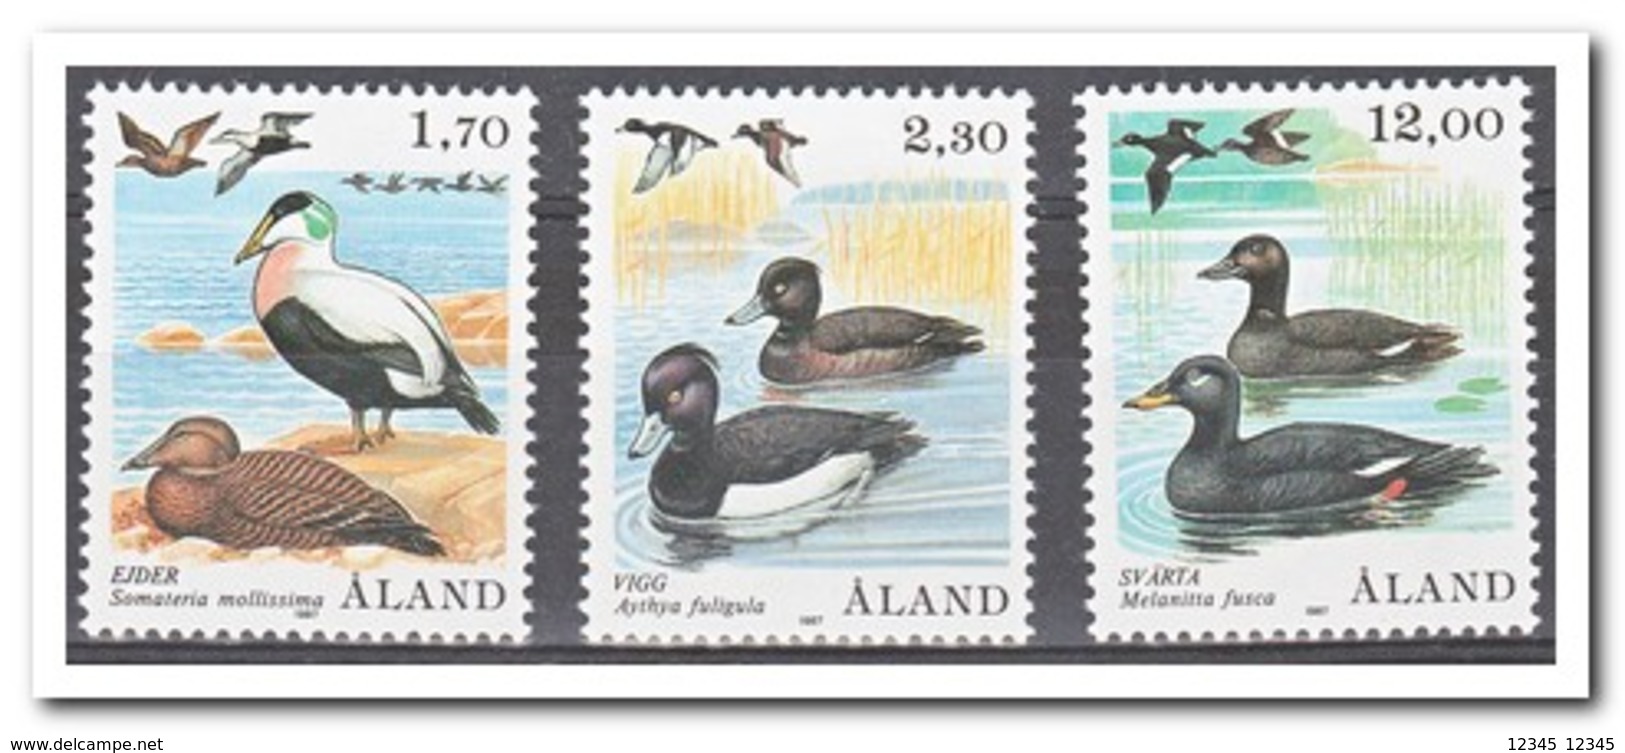 Aland 1987, Postfris MNH, Birds - Aland